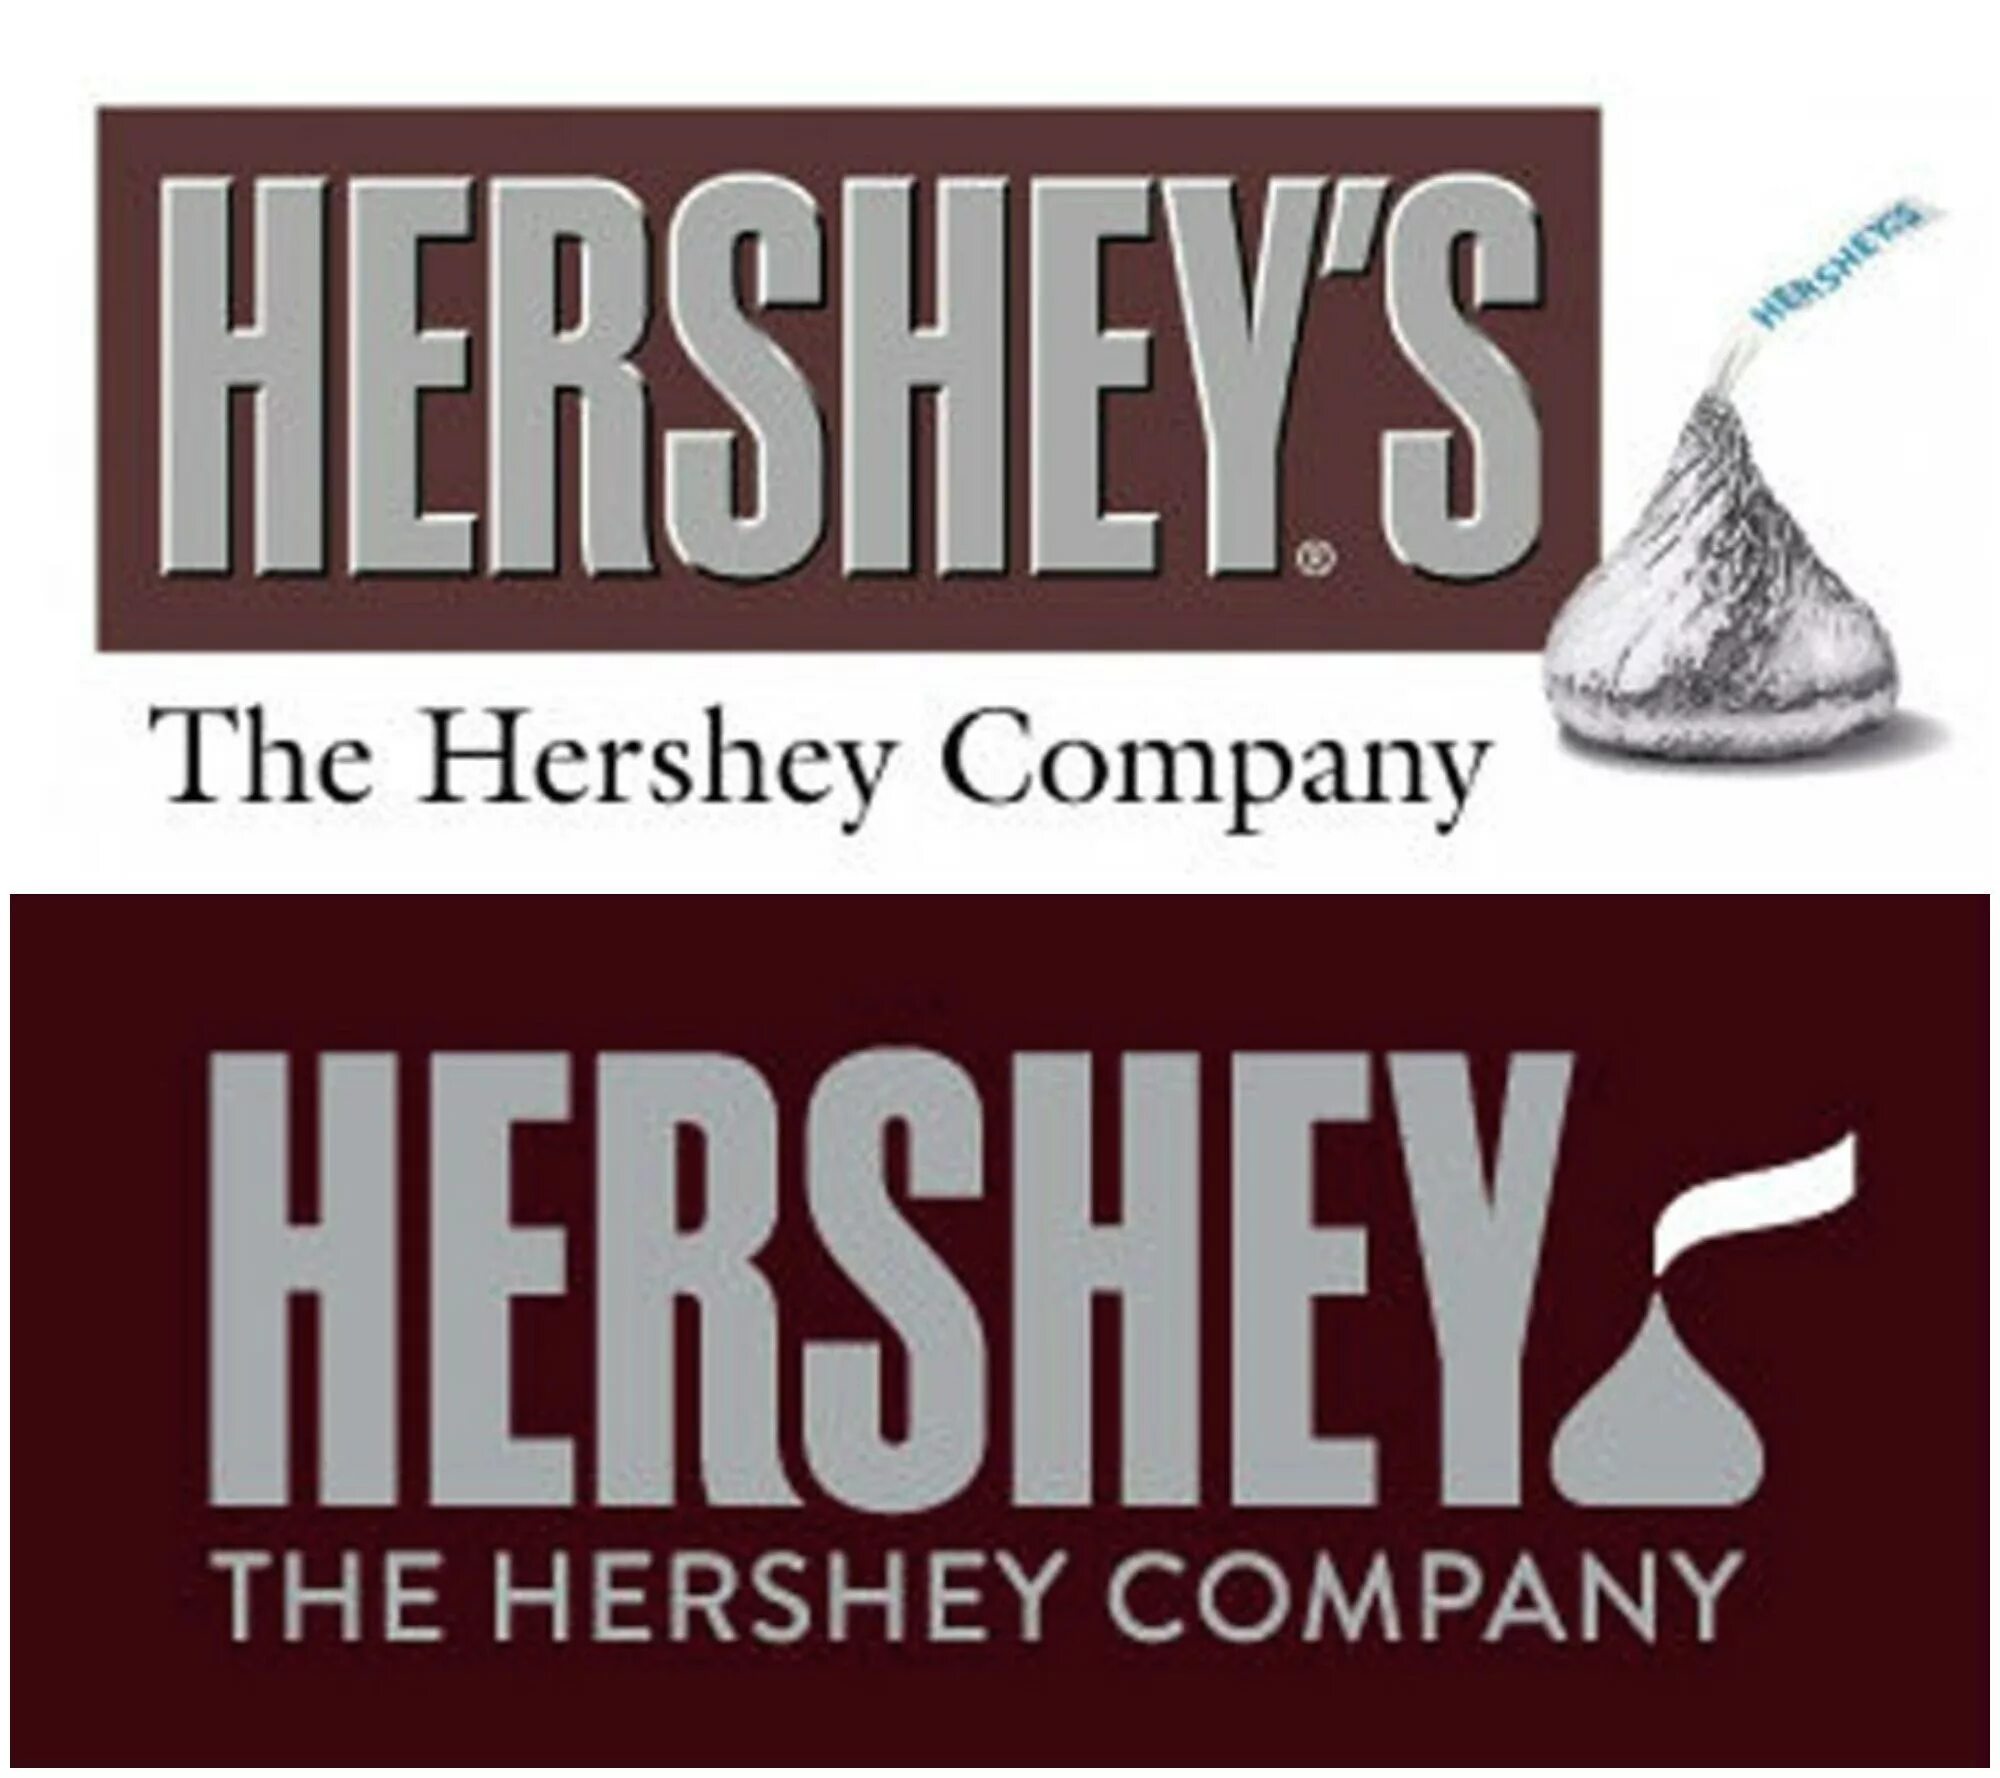 The hershey company. Hershey's логотип. Хершес лого. Hershey co логотип. Hershey's ребрендинг.